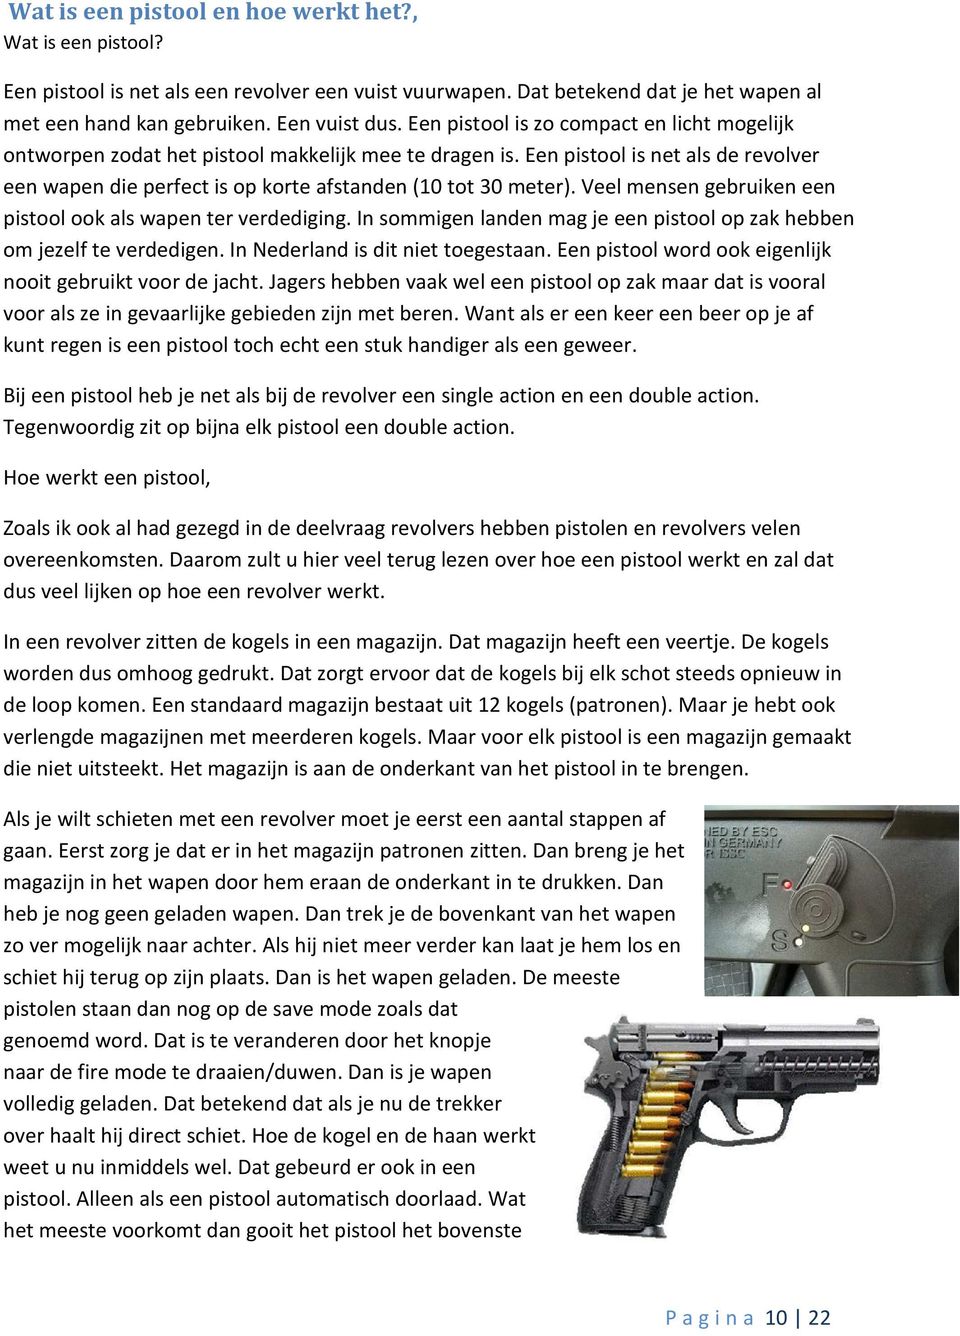 Veel mensen gebruiken een pistool ook als wapen ter verdediging. In sommigen landen mag je een pistool op zak hebben om jezelf te verdedigen. In Nederland is dit niet toegestaan.